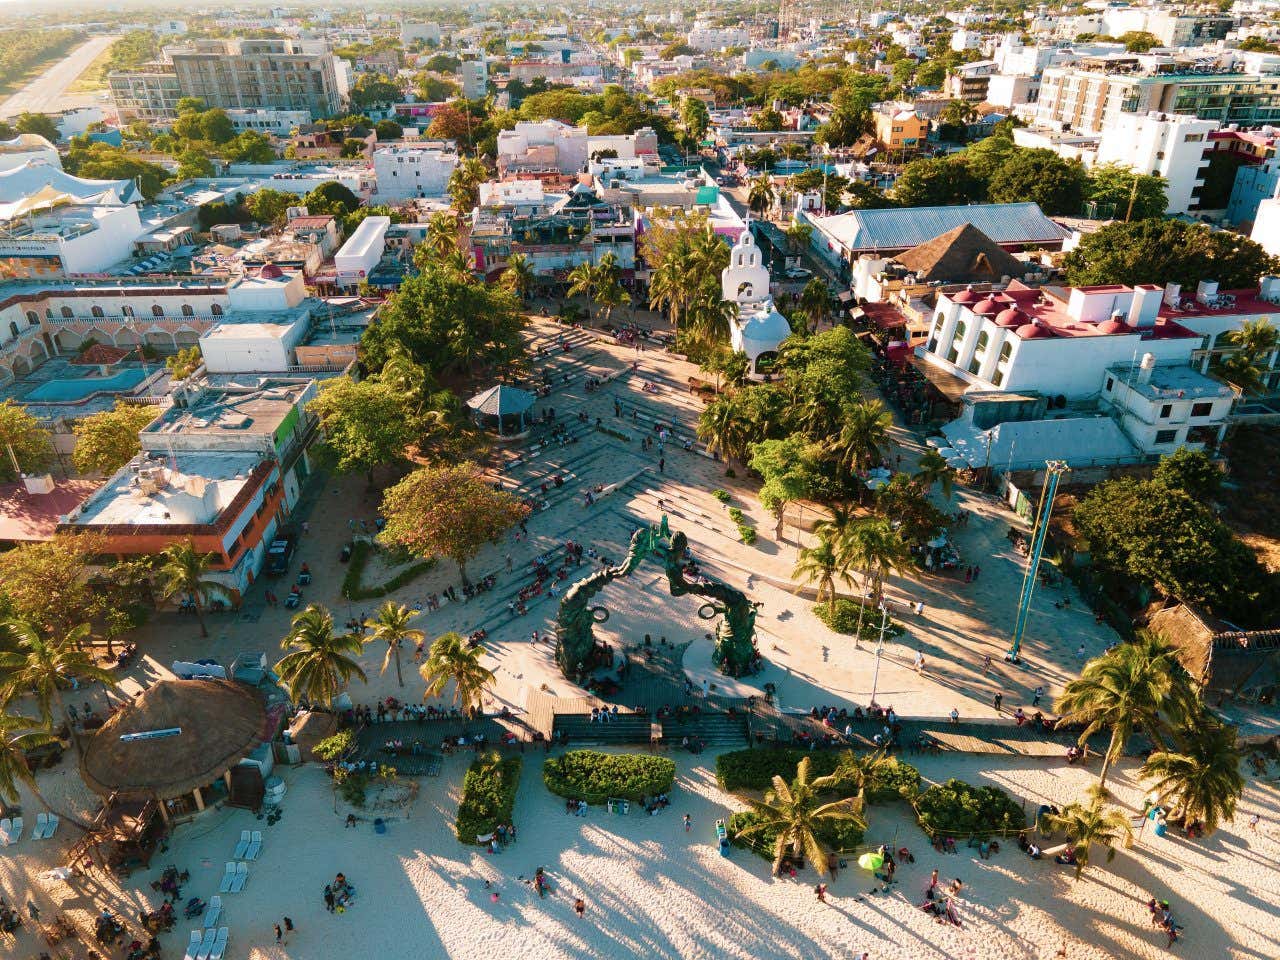 Aerial view of Parque Fundadores in Playa del Carmen, Mexico